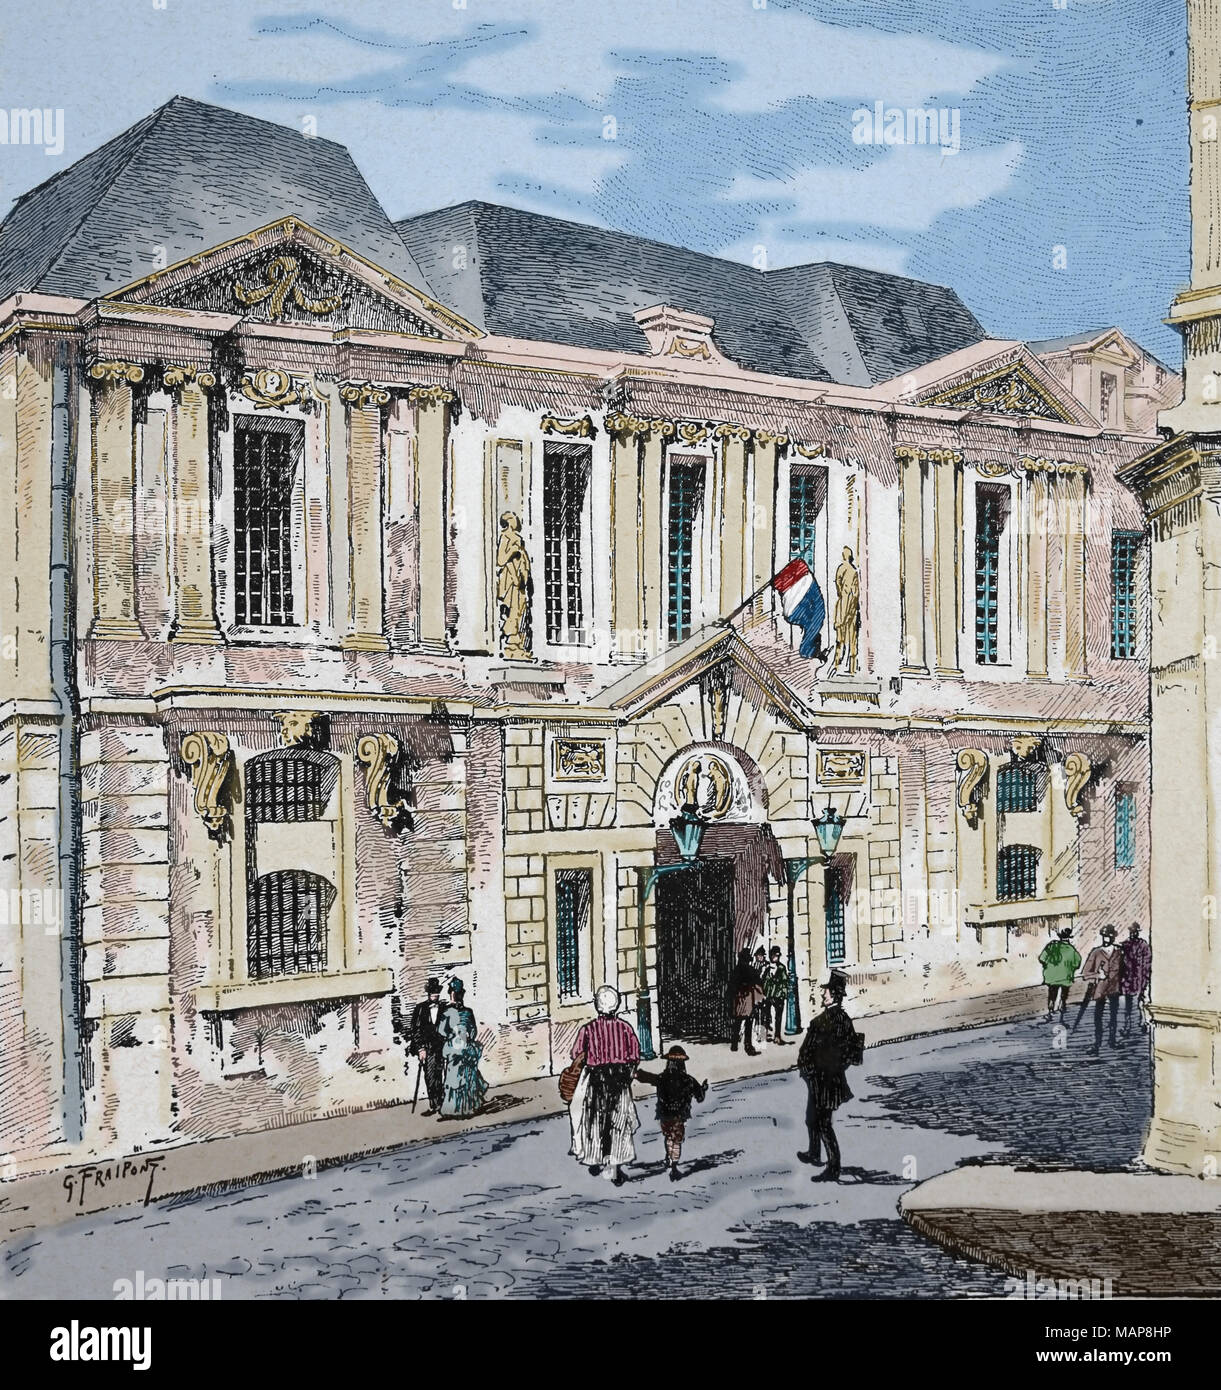 La Francia. Parigi. Archivio storico presso l'hotel Carnavalet. Incisione del XIX secolo. Foto Stock